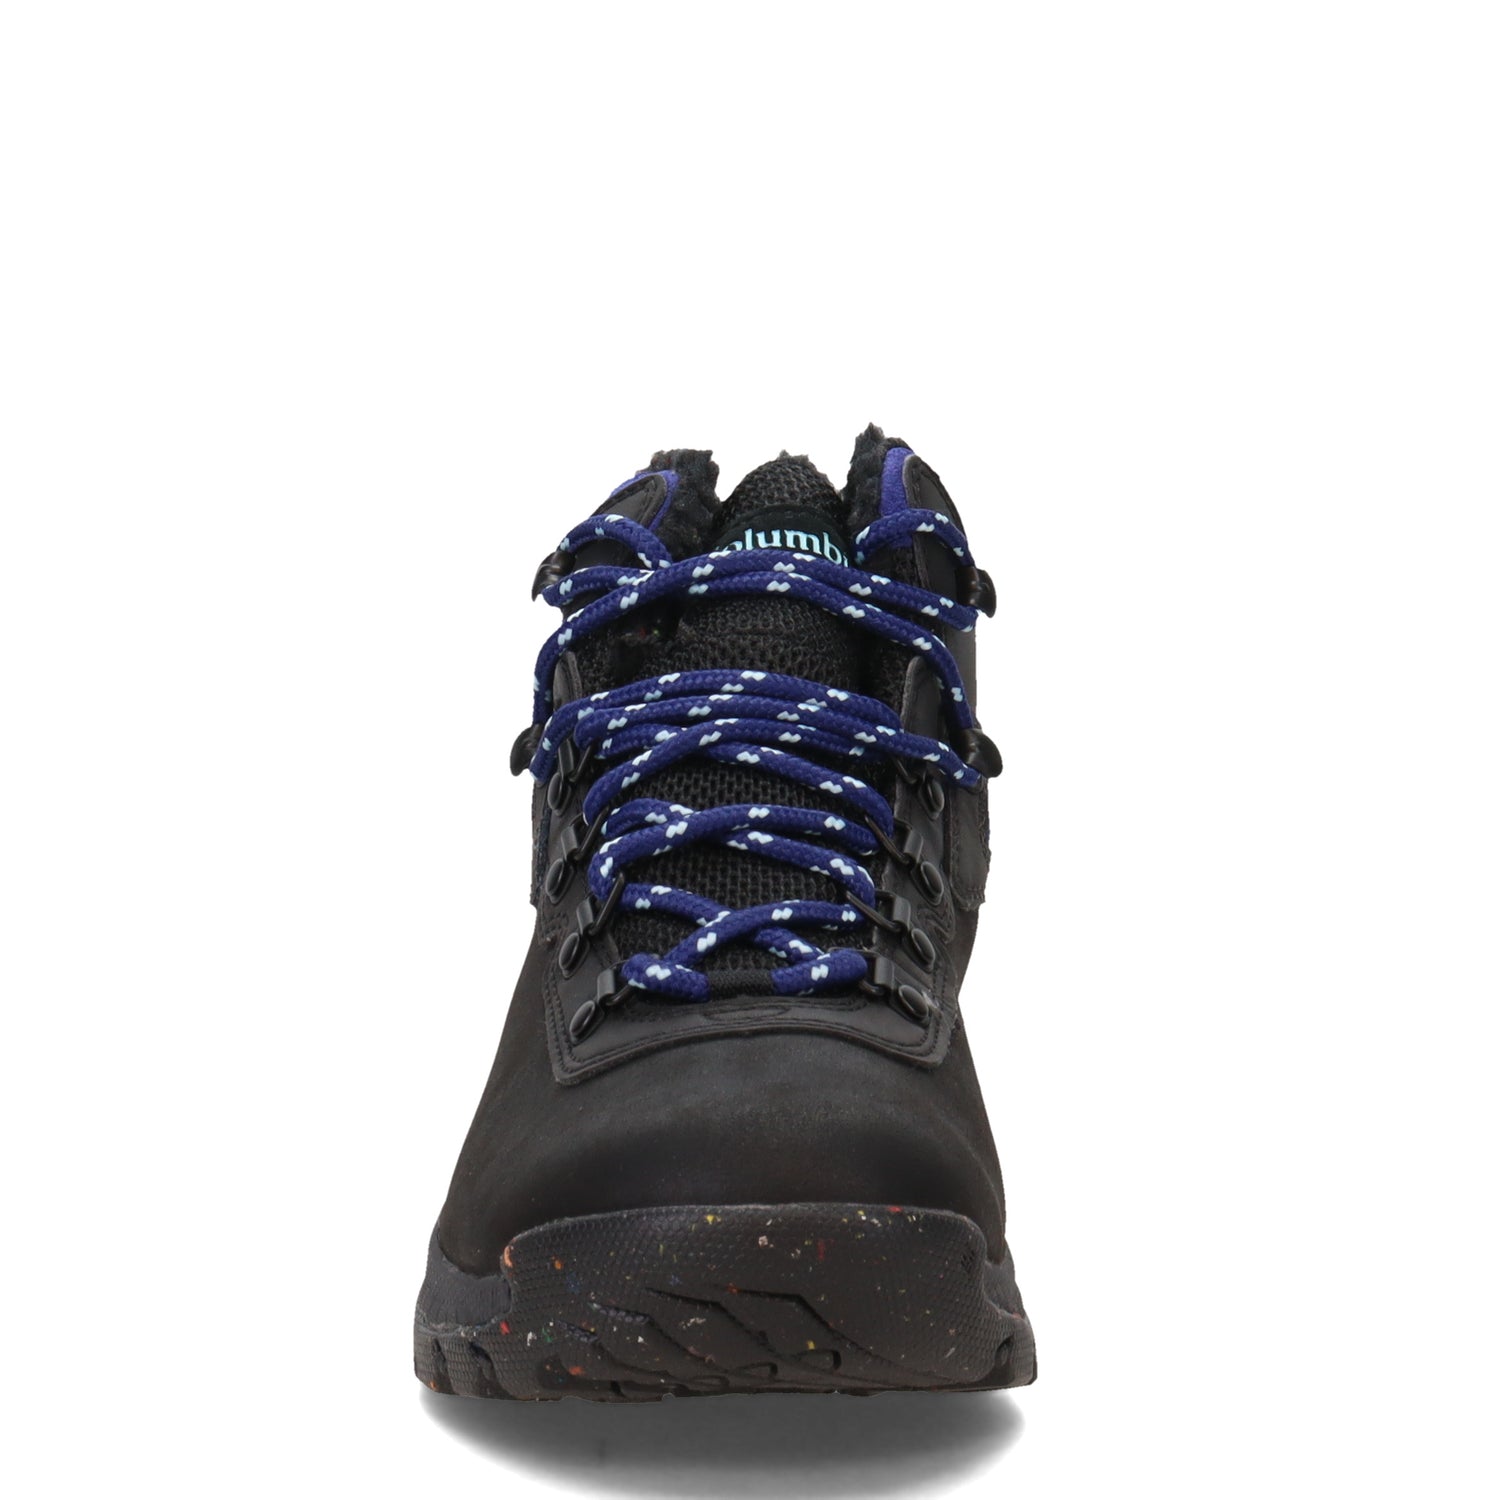 Peltz Shoes  Women's Columbia  Newton Ridge Plus Omni-Heat Boot BLACK 2015691-010